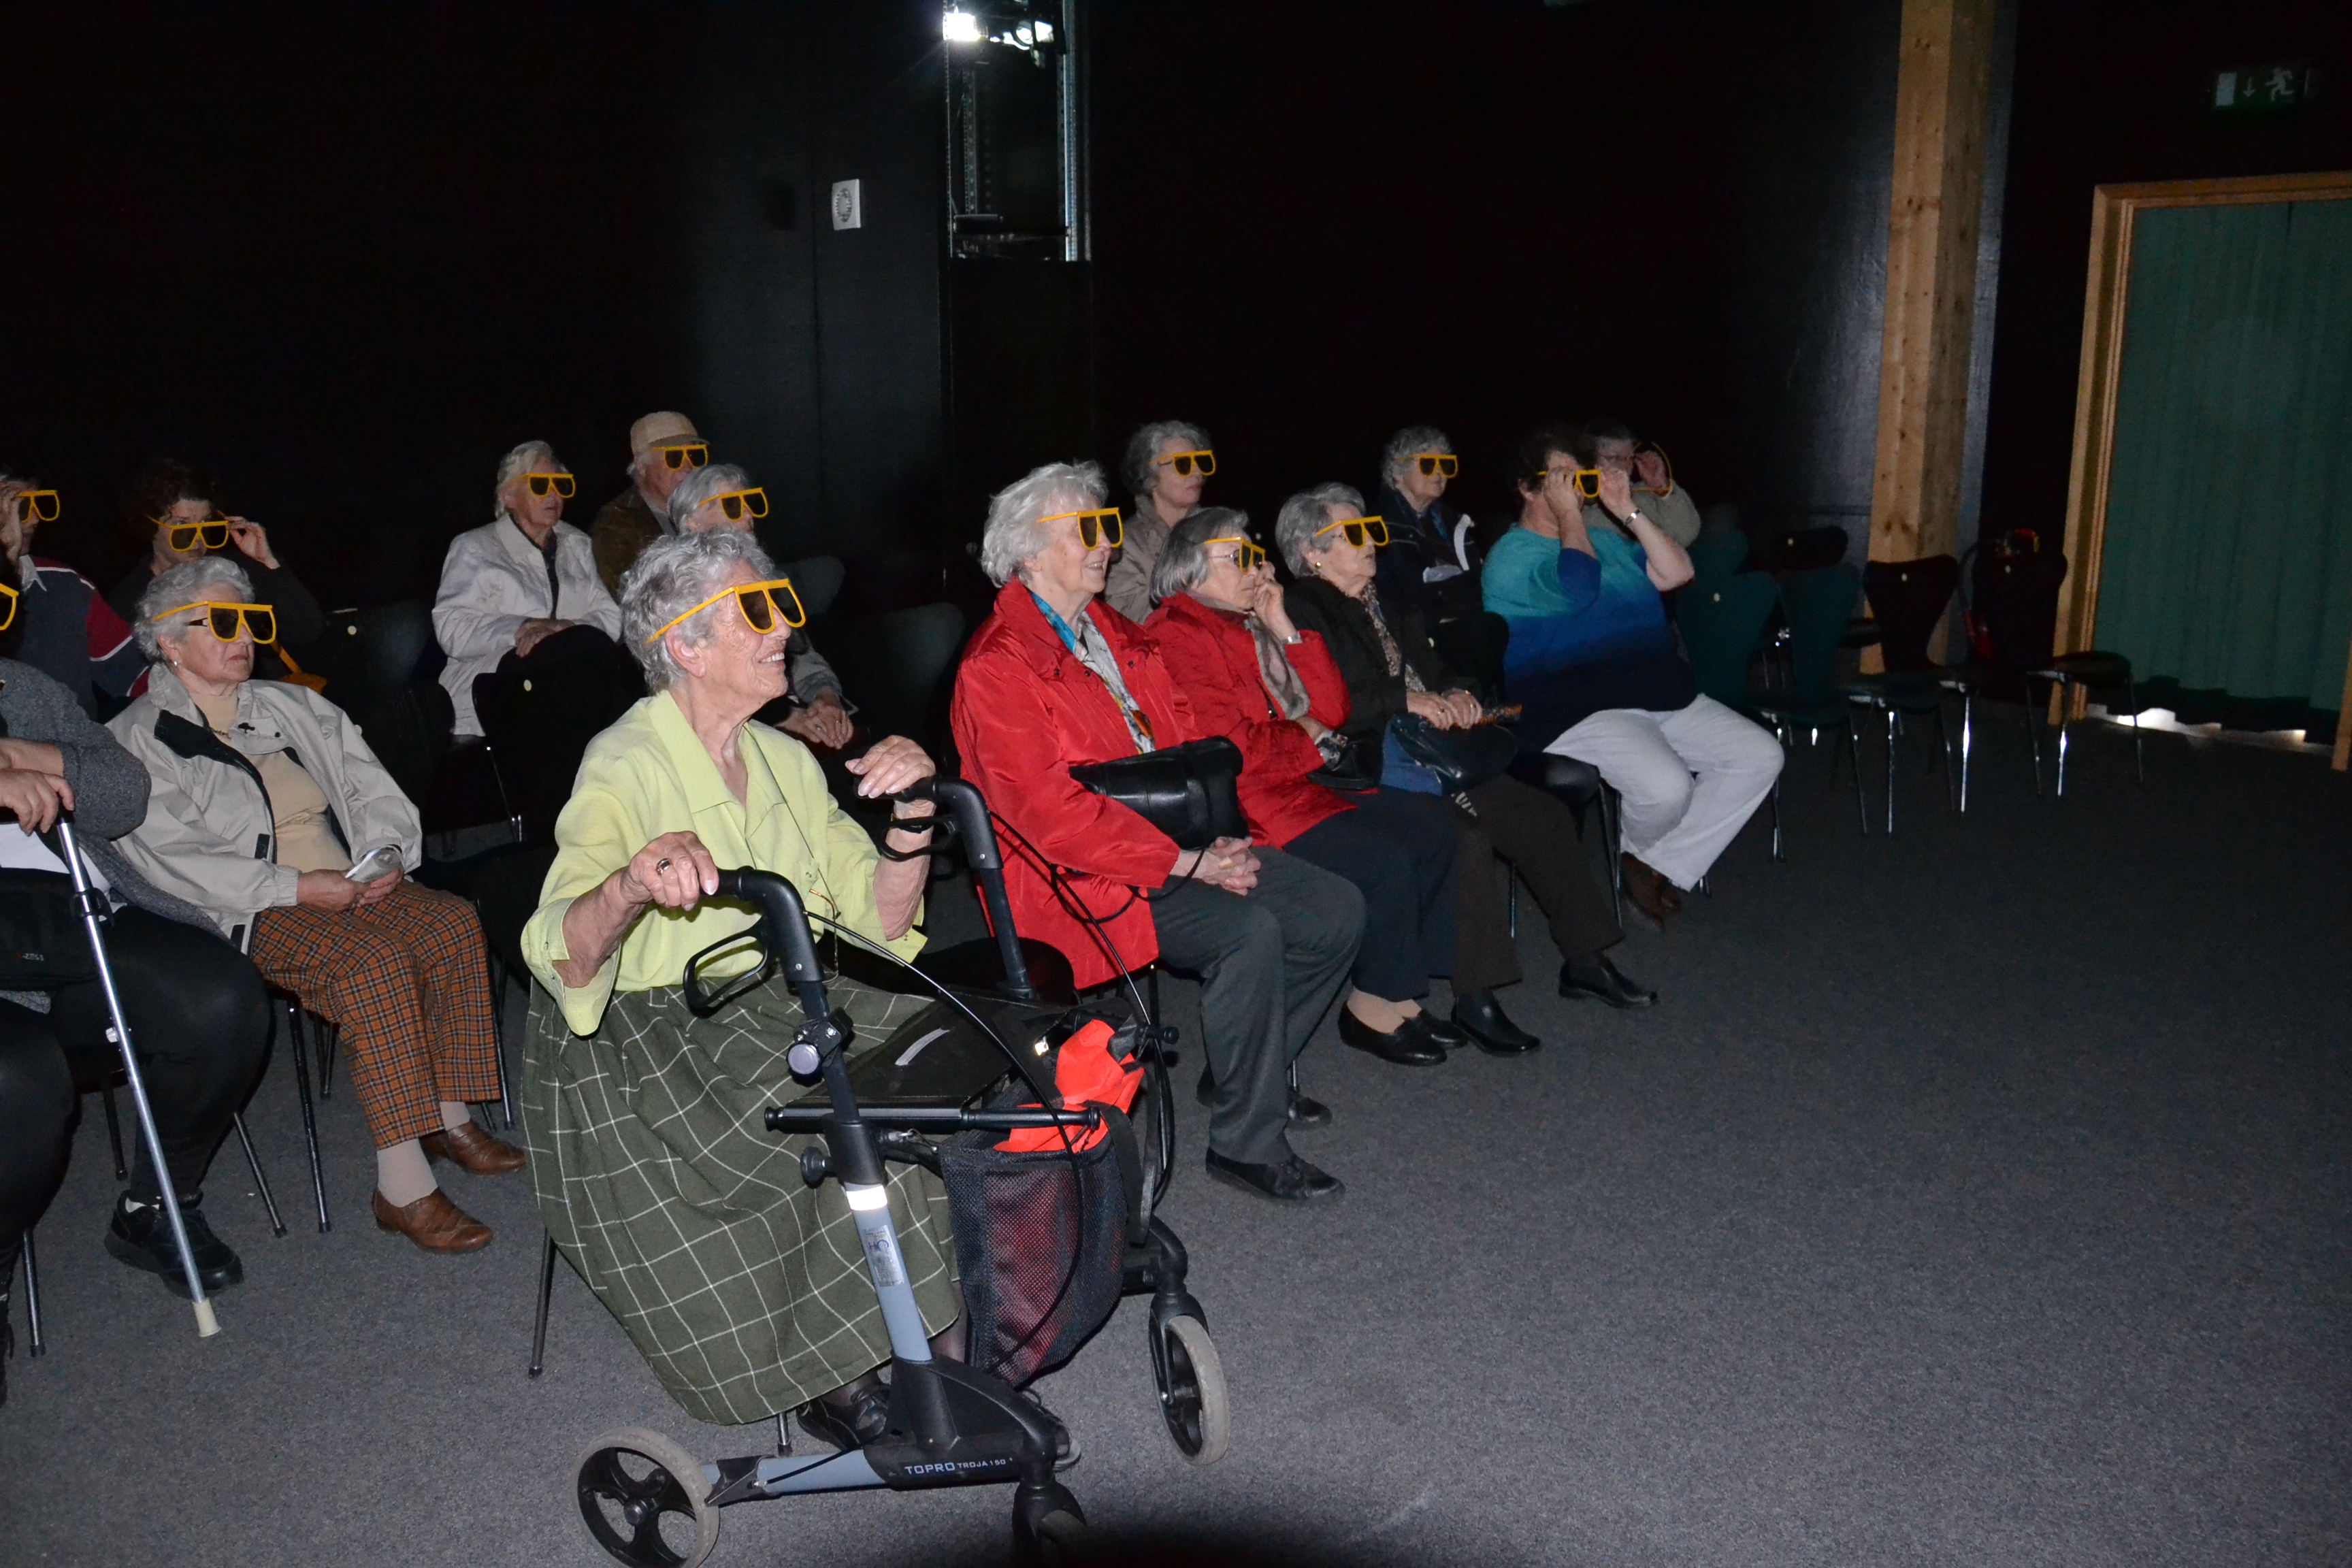 Begeistert wurden die 3D-Filme im Haus der Natur von unseren Senioren aufgenommen.